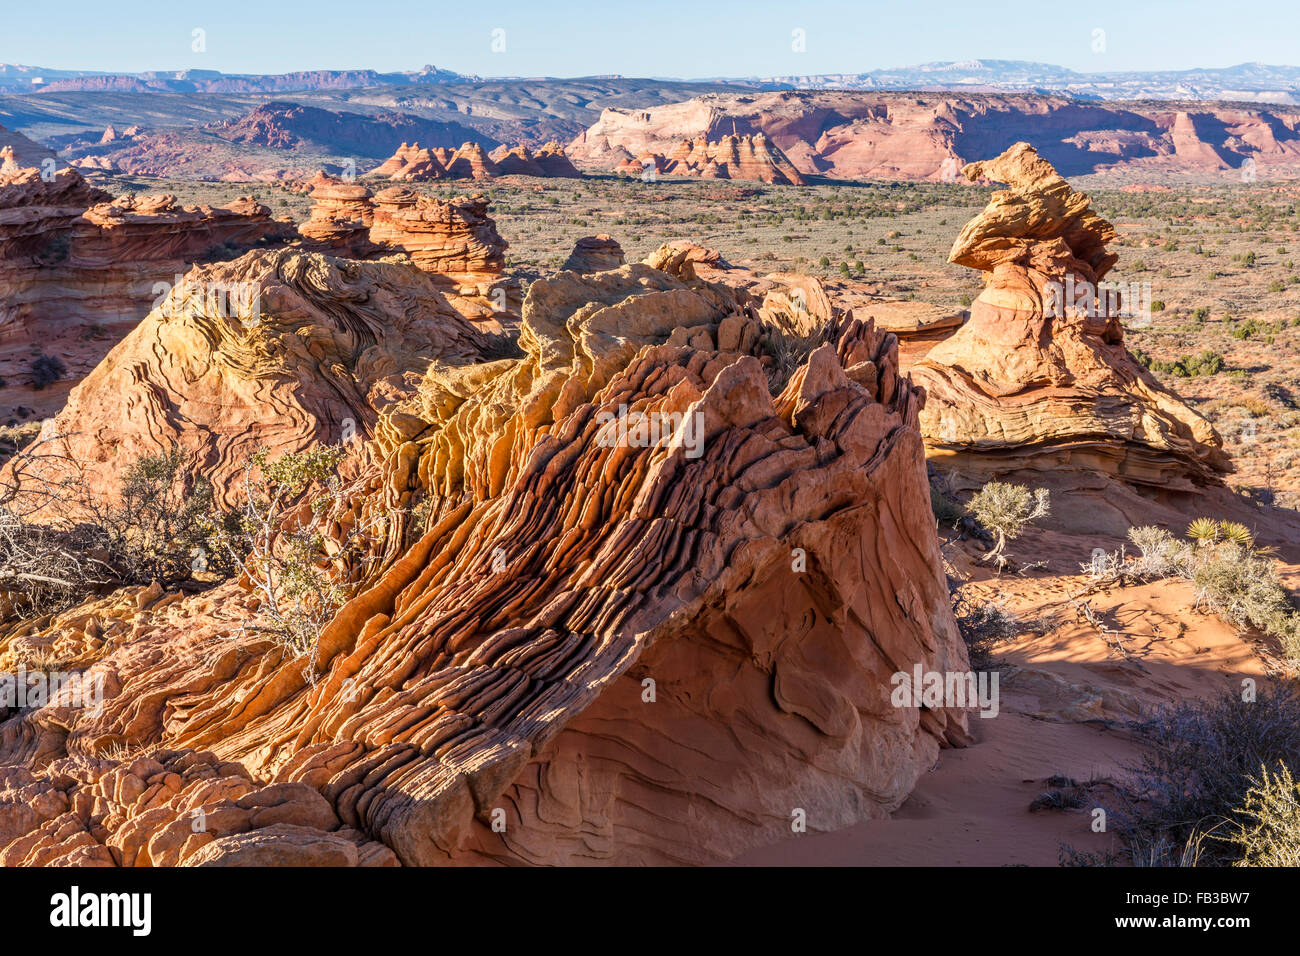 Strane formazioni rocciose note come rocce Dali in Coyote Buttes regione del Vermillion Cliffs National Monument in Arizona Foto Stock